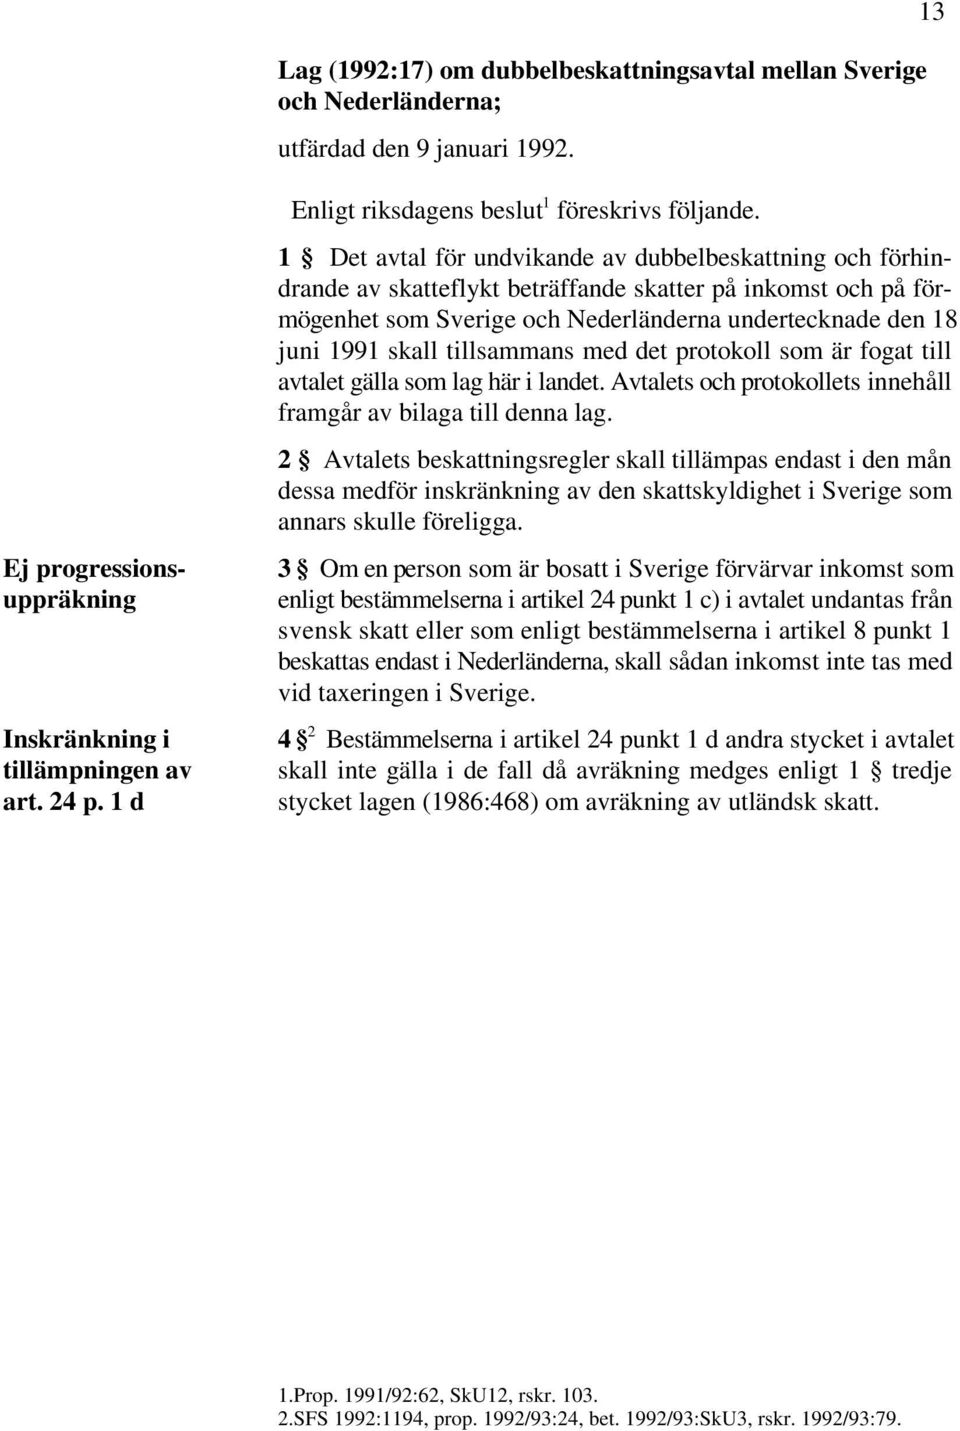 1 Det avtal för undvikande av dubbelbeskattning och förhindrande av skatteflykt beträffande skatter på inkomst och på förmögenhet som Sverige och Nederländerna undertecknade den 18 juni 1991 skall